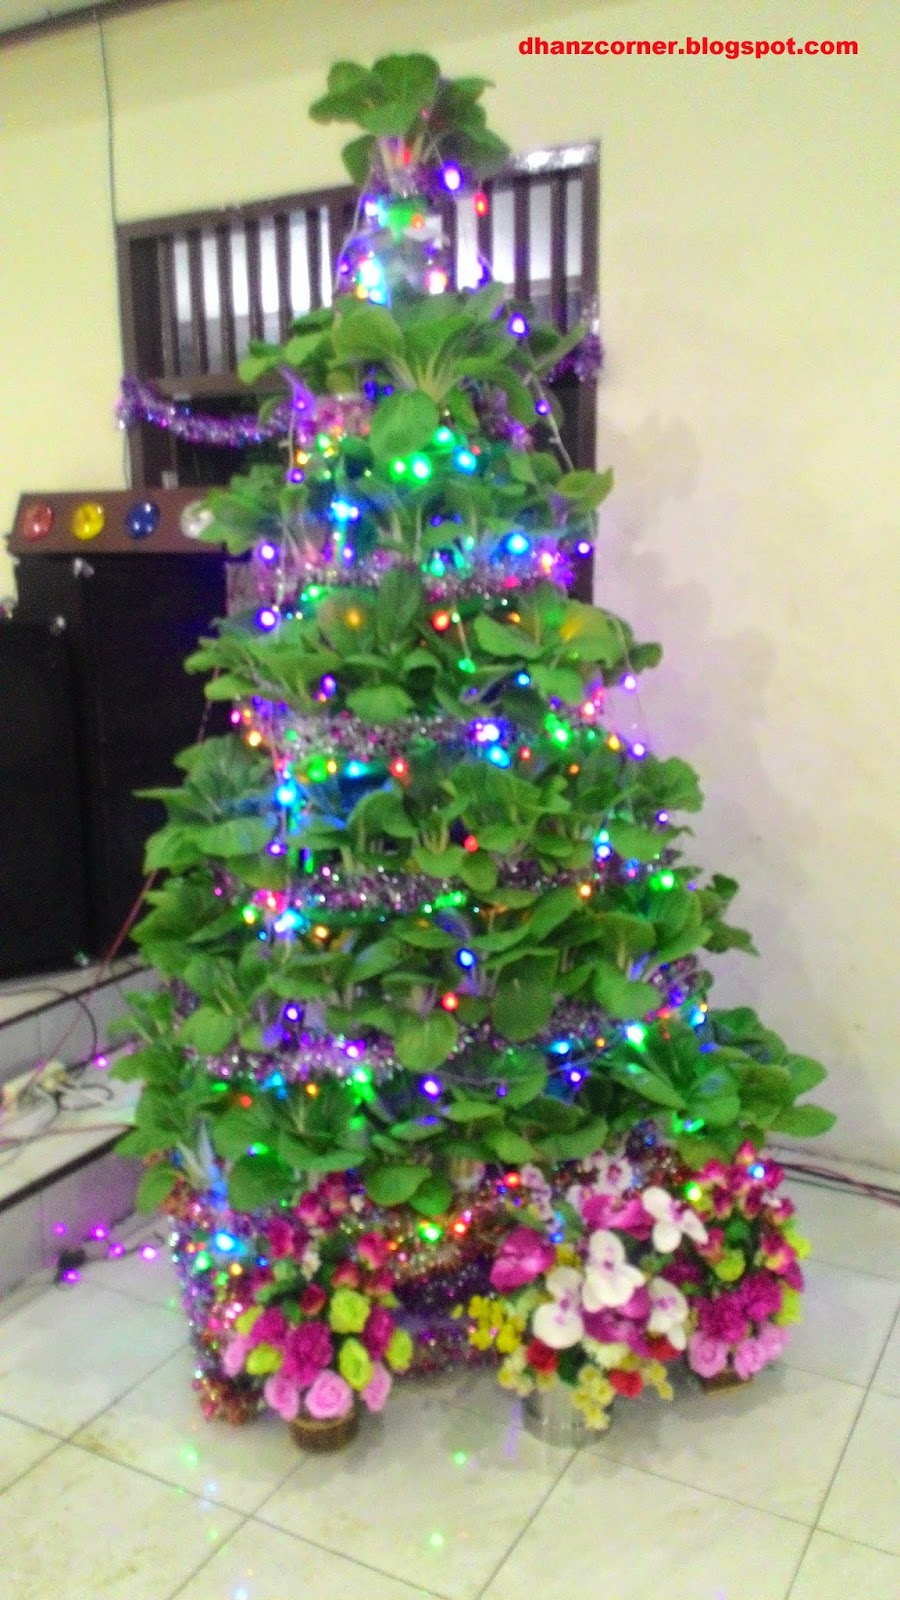 Membuat Pohon Natal Dari Pohon Sawi Dhanz Corner